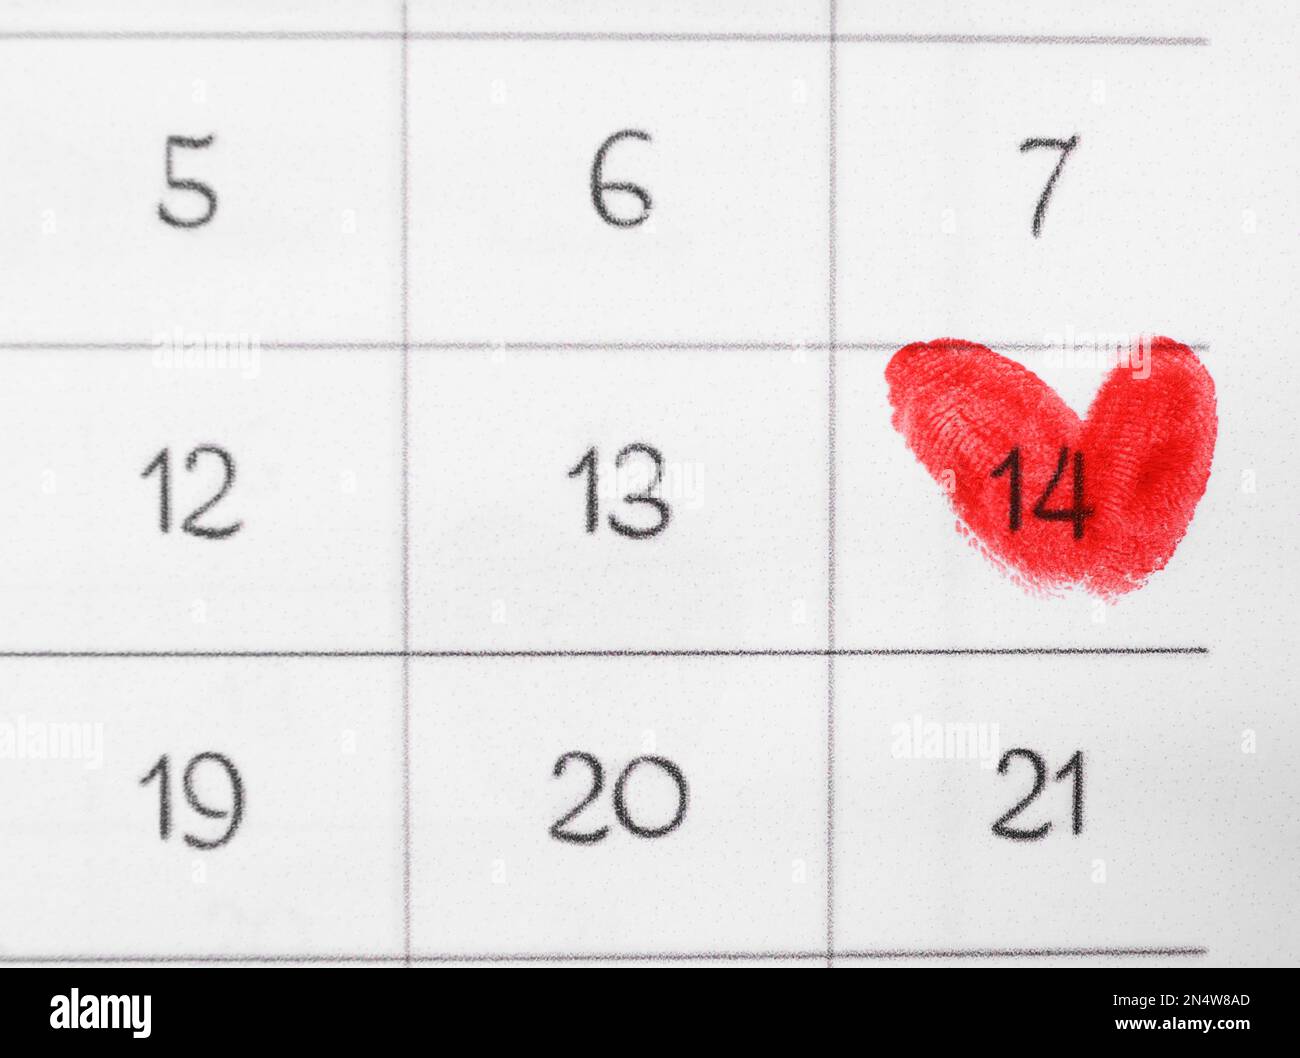 La Saint-Valentin est marquée d'empreintes digitales rouges sur la feuille de calendrier, vue du dessus Banque D'Images